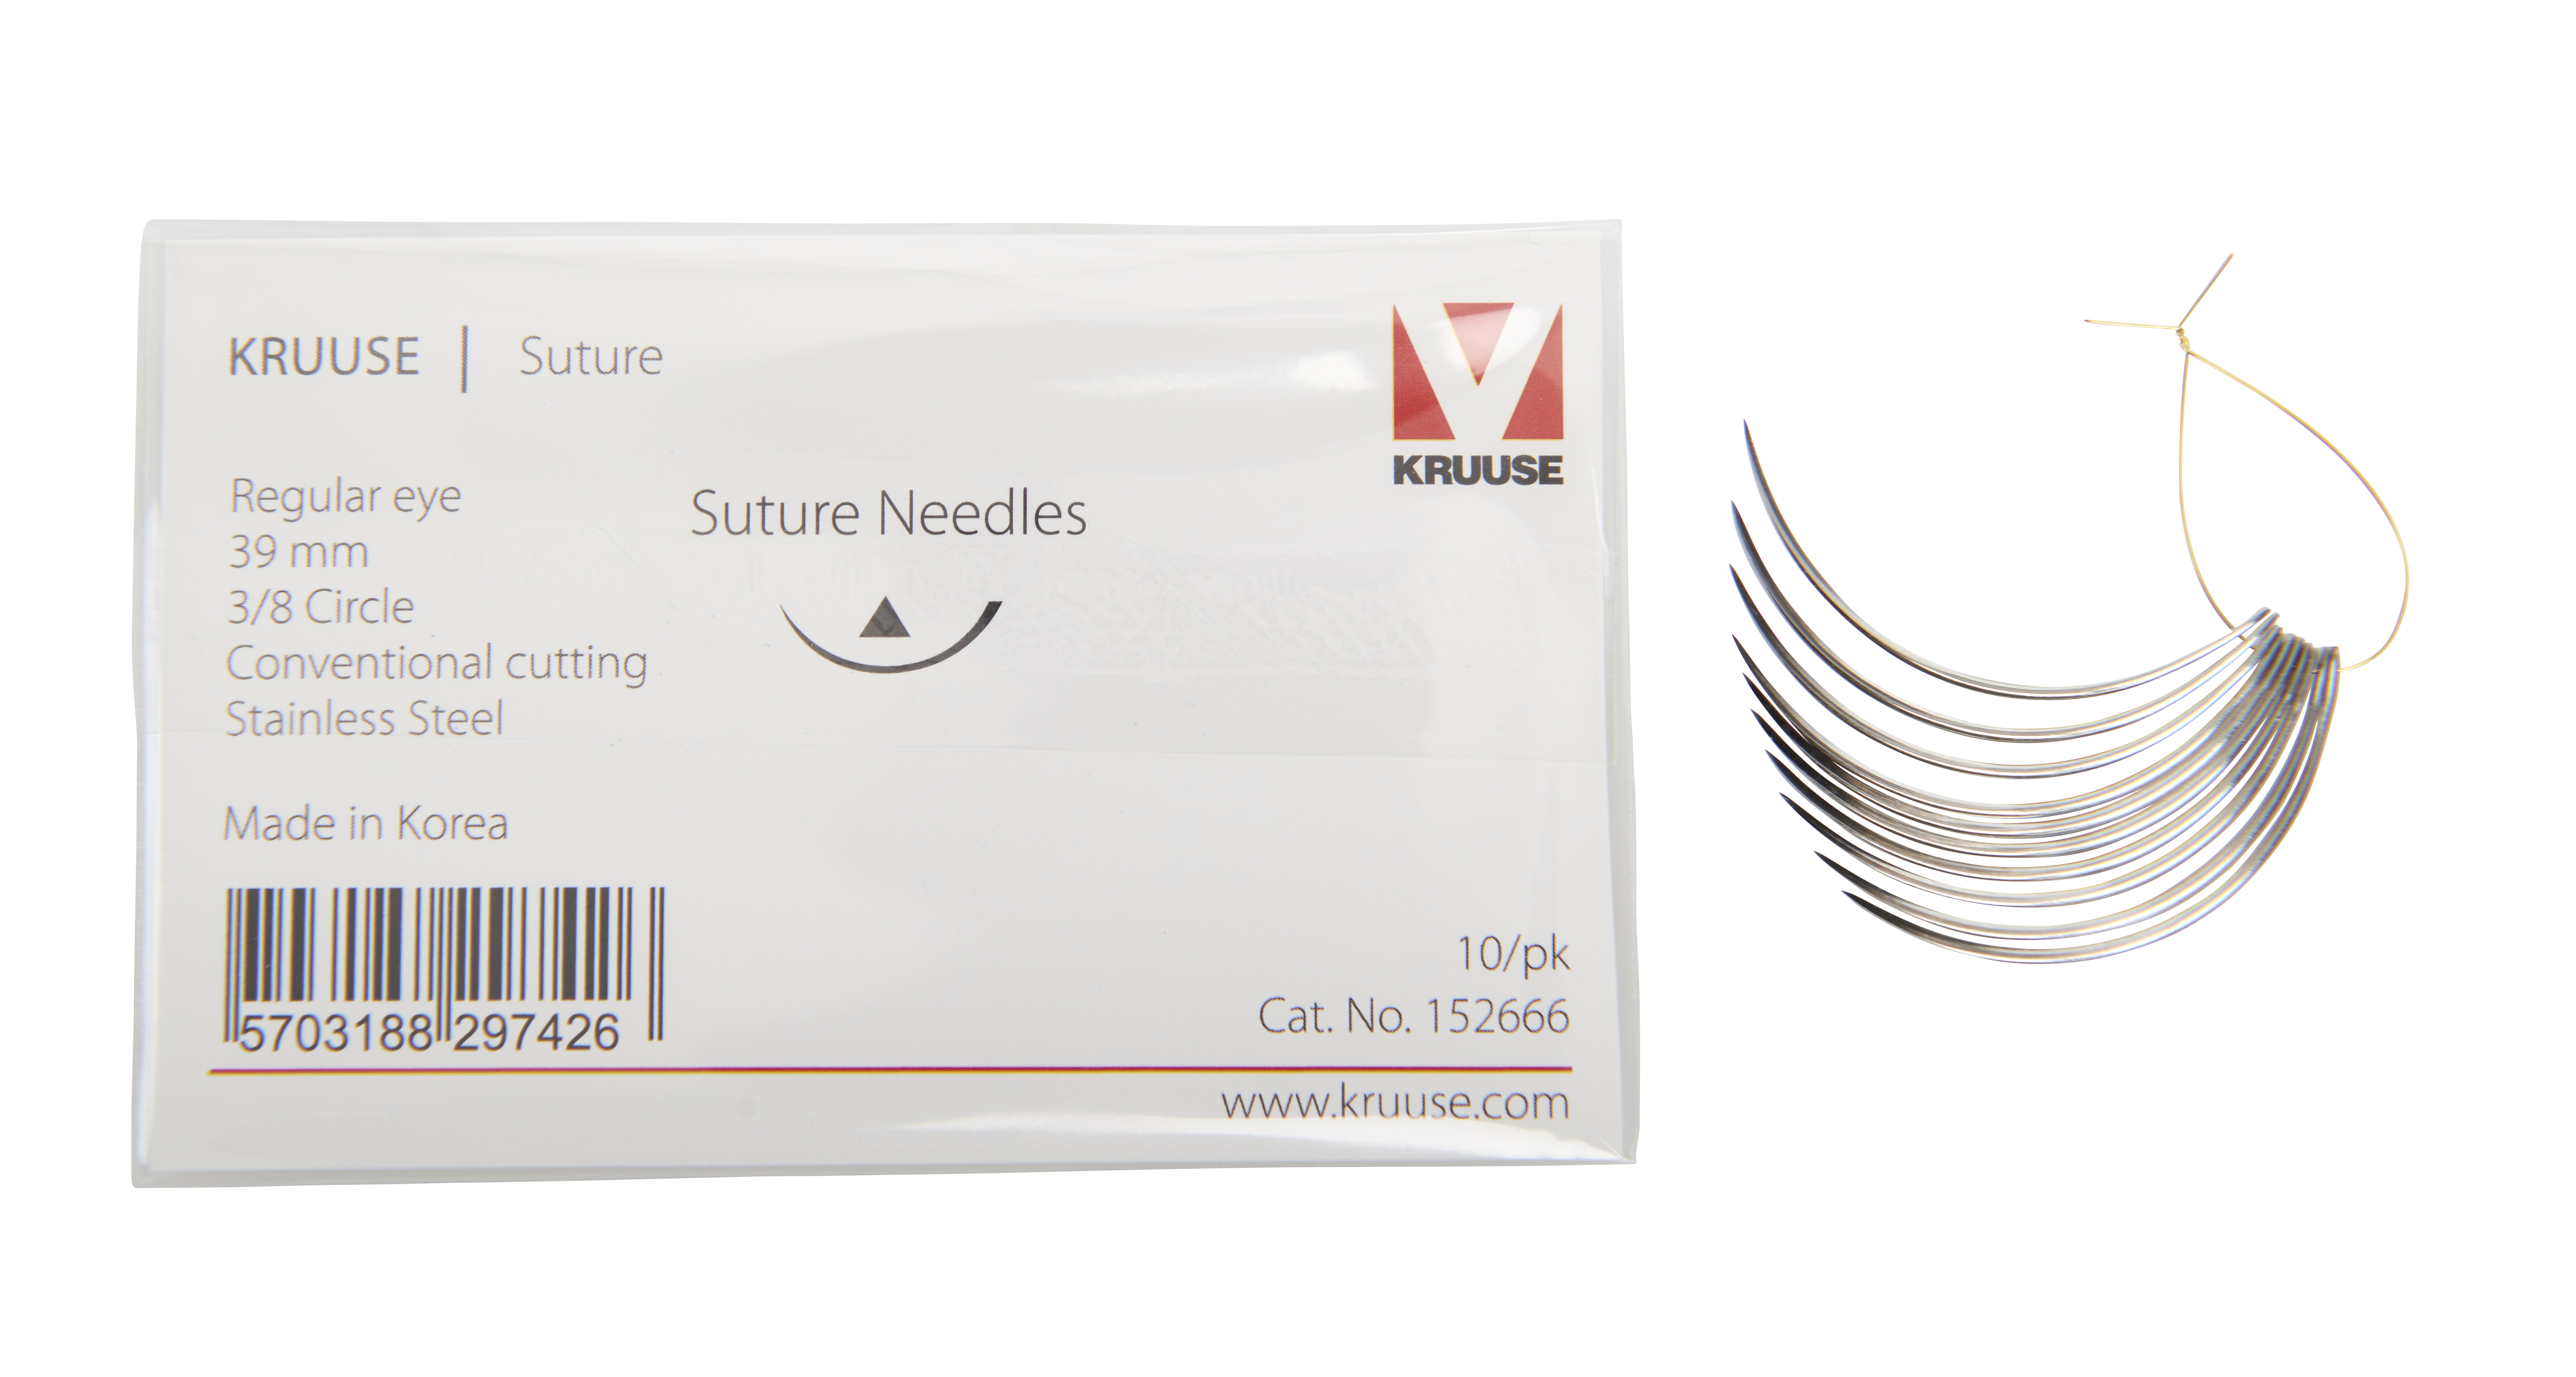 KRUUSE Suture Needle, regular eye, 3/8 circle, conventional cutting, 39 mm, 10/pk